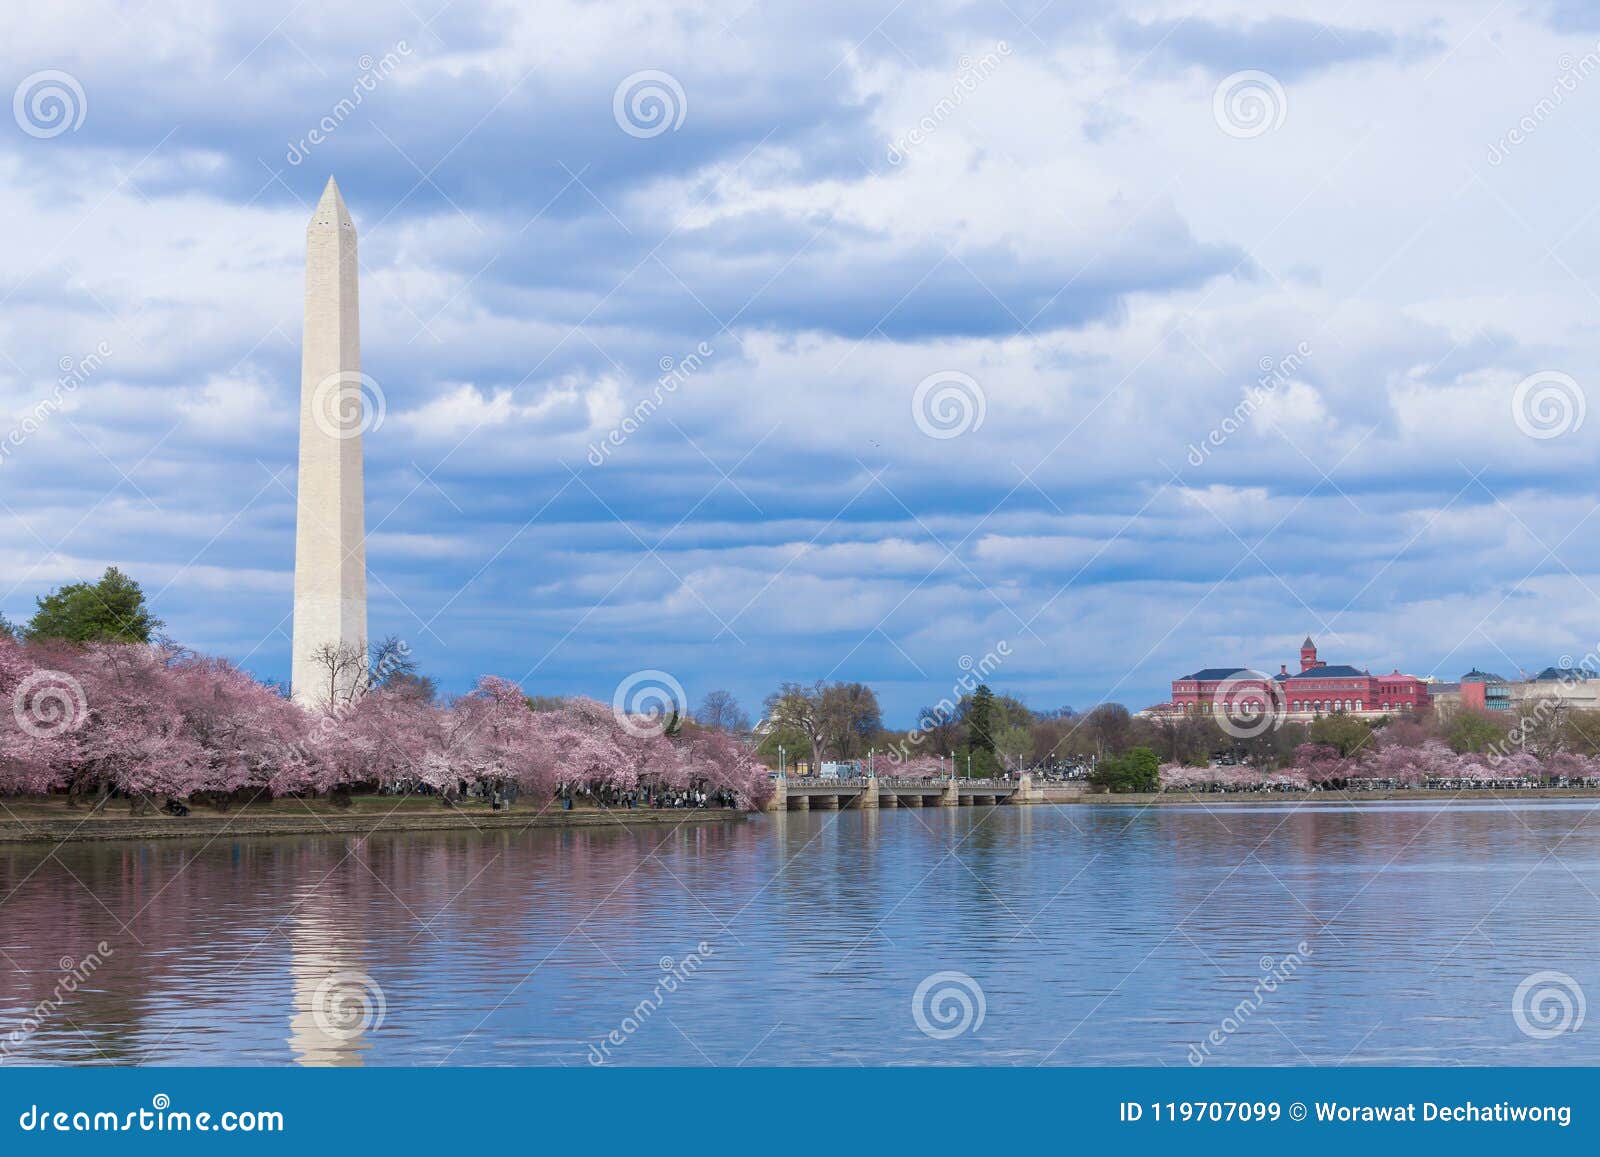 Washington Monument durante Cherry Blossom Festival na bacia maré, Washington DC, EUA